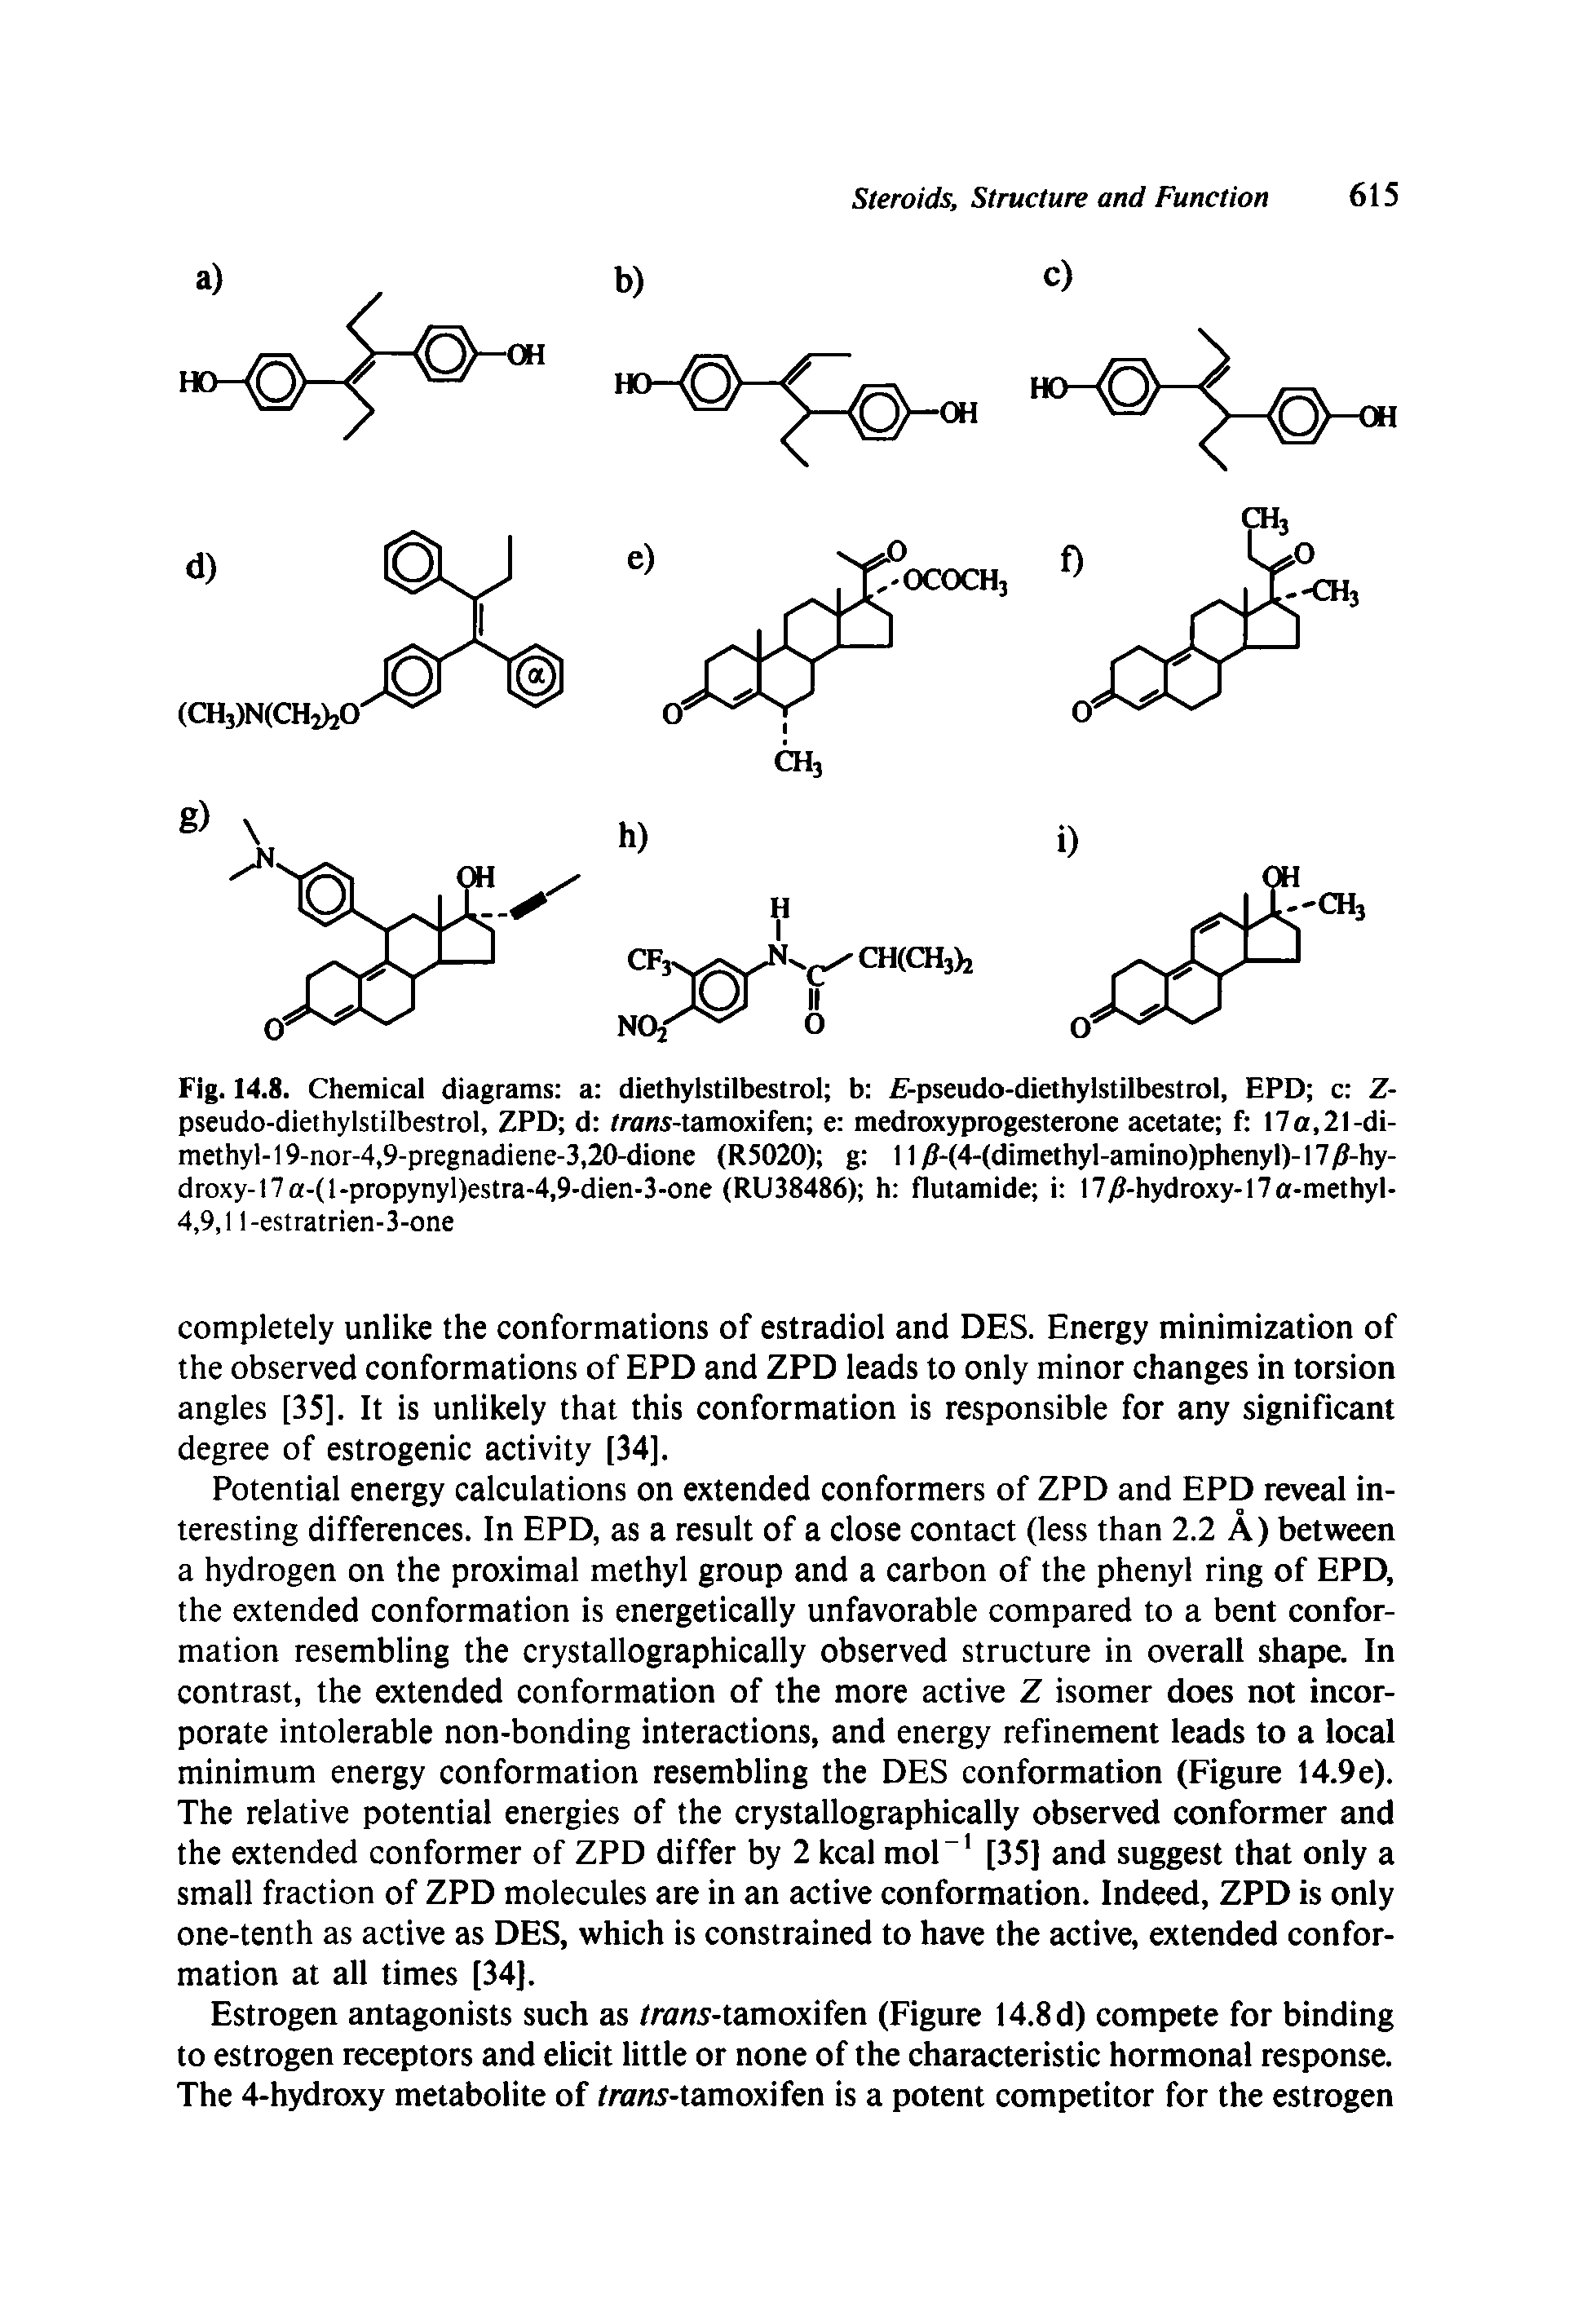 Fig. 14.8. Chemical diagrams a diethylstilbestrol b f-pseudo-diethylstilbestrol, EPD c Z-pseudo-diethylstilbestrol, ZPD d /rows-tamoxifen e medroxyprogesterone acetate f 17a,21-dimethyl-19-nor-4,9-pregnadiene-3,20-dione (R5020) g 1 lyS-(4-(dimethyl-amino)phenyl)-l7J8-hy-droxy-17a-(l-propynyl)estra-4,9-dien-3-one (RU38486) h flutamide i l7j8-hydroxy-17a-methyl-4,9,1 l-estratrien-3-one...